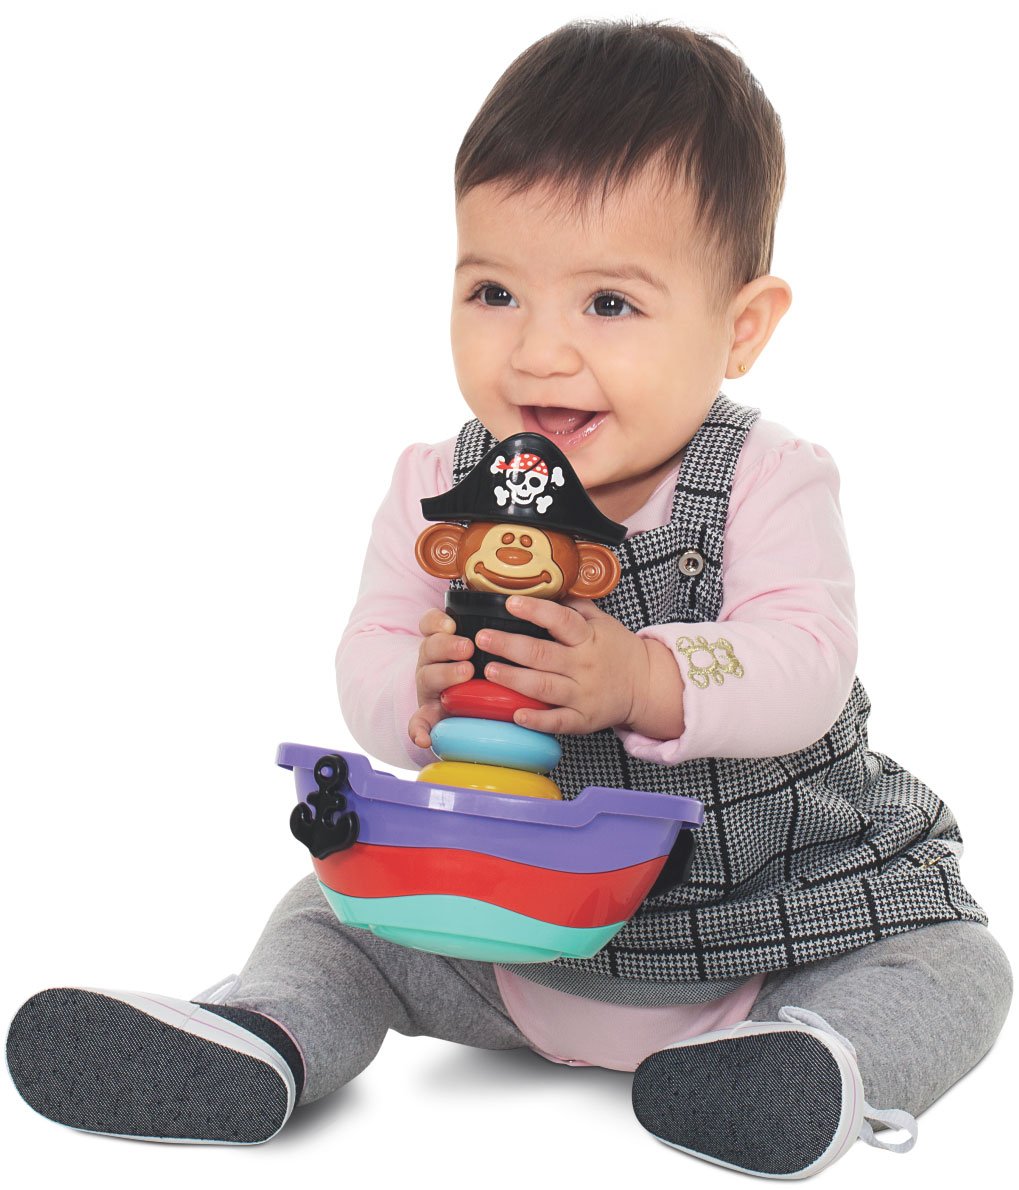 Empilha Baby Pirata - Brinquedo para Bebês acima de 5 meses - 3